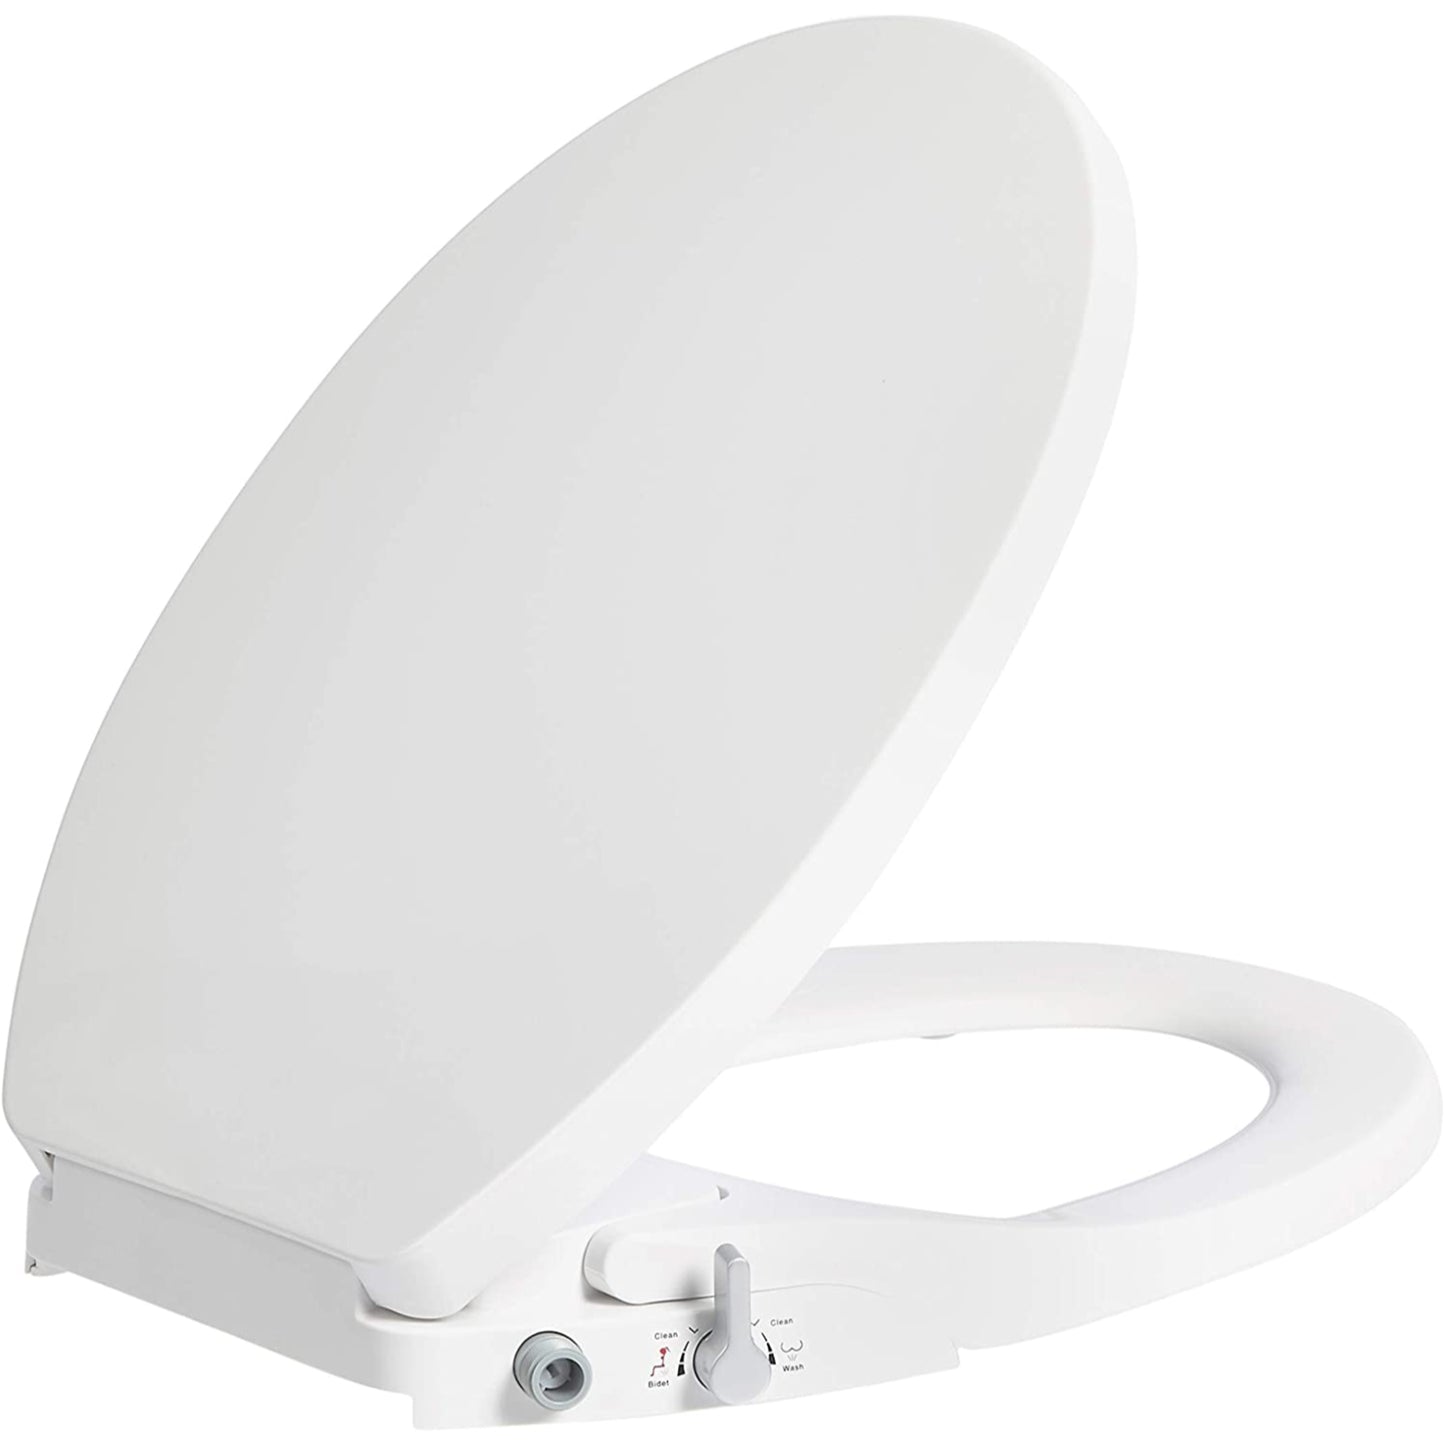 Hausen Non-Electric Bidet Toilet Seat, Round, White